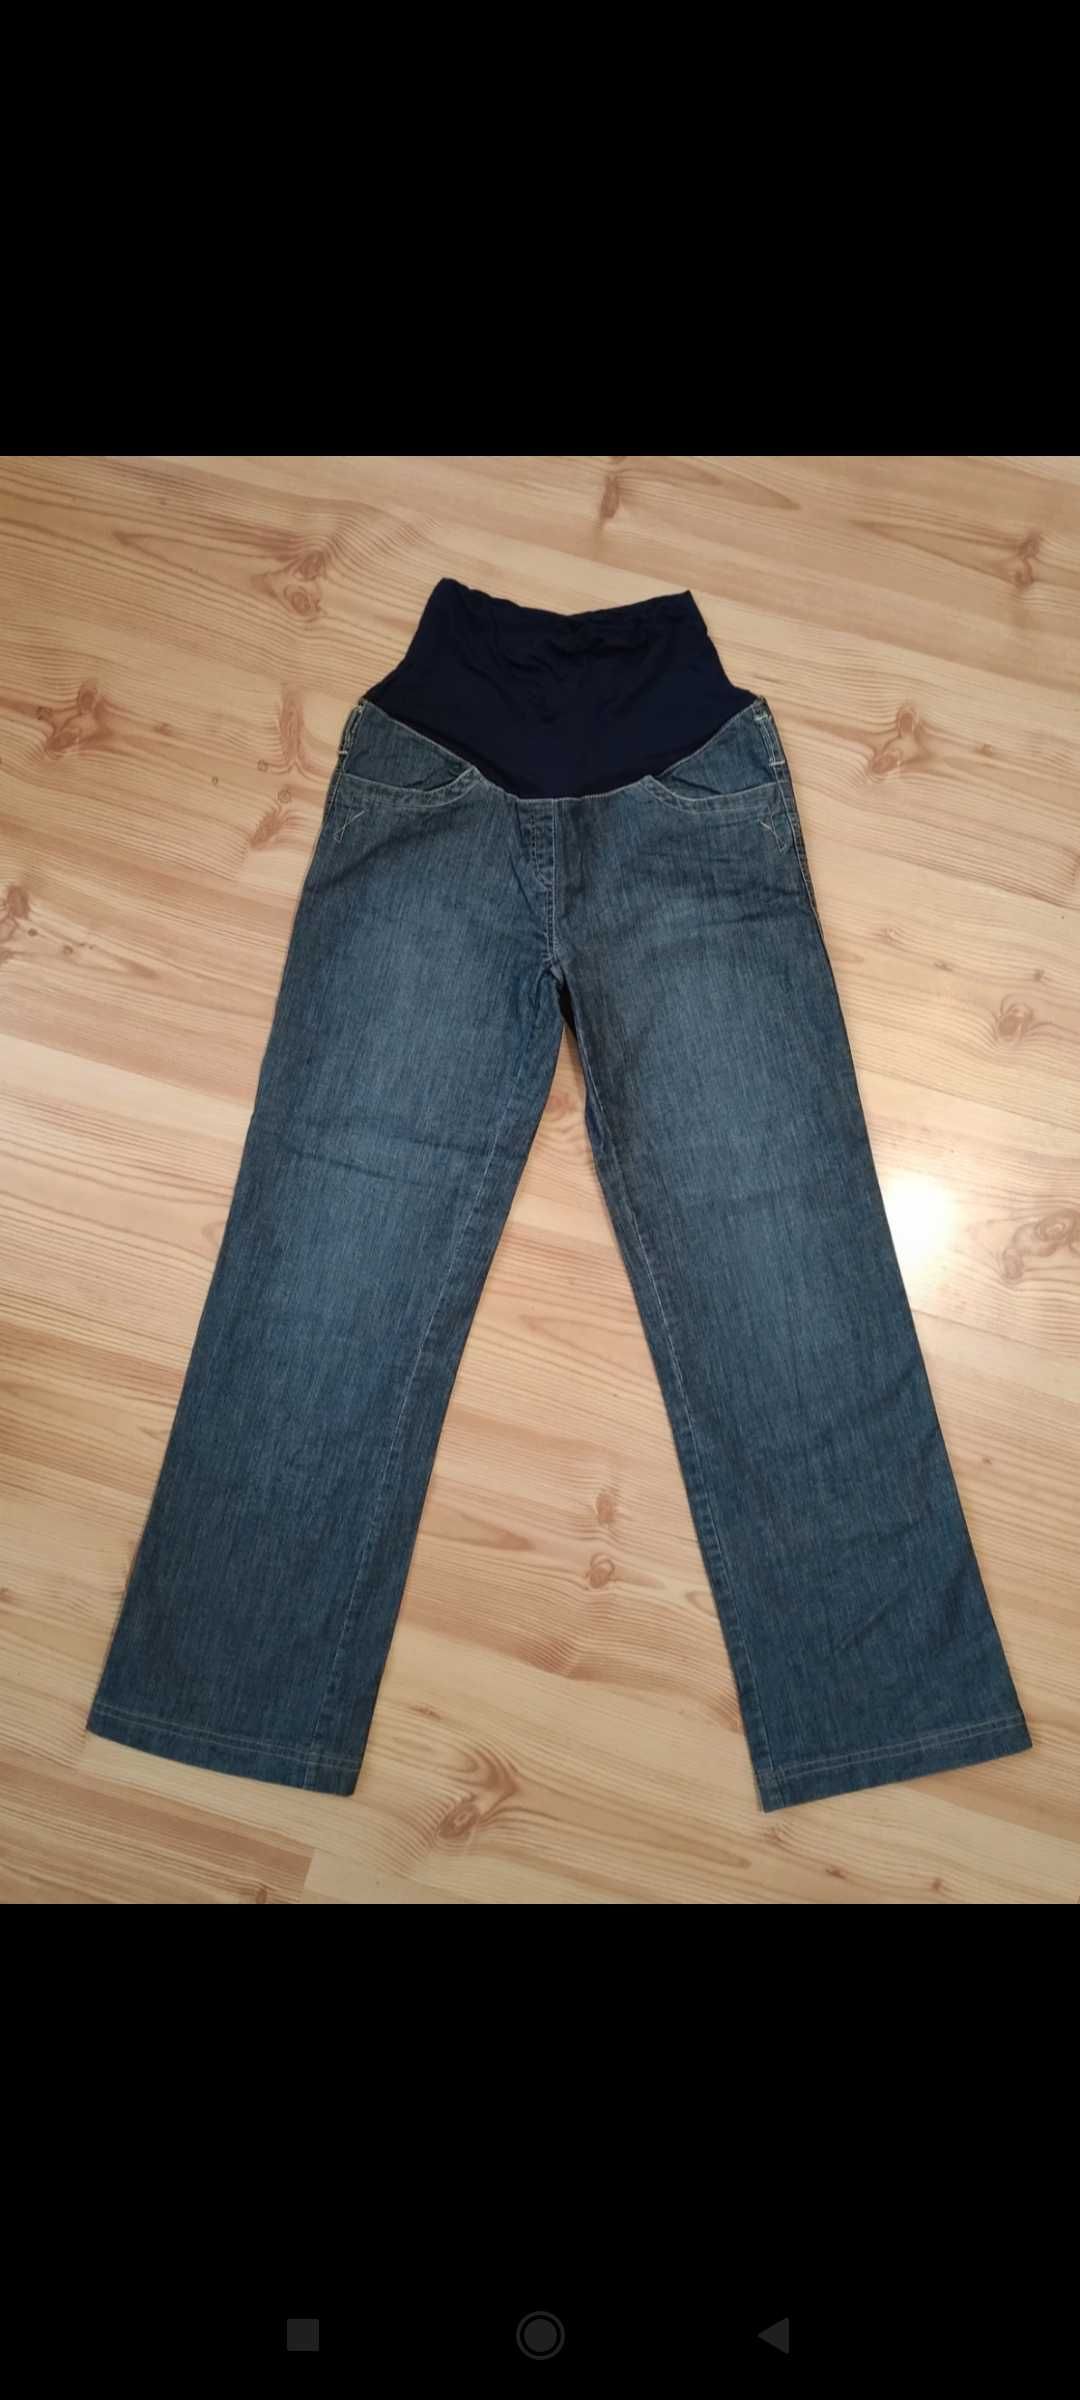 Spodnie ciążowe Mama Tinello  S / M cienki jeans prosta nogawka